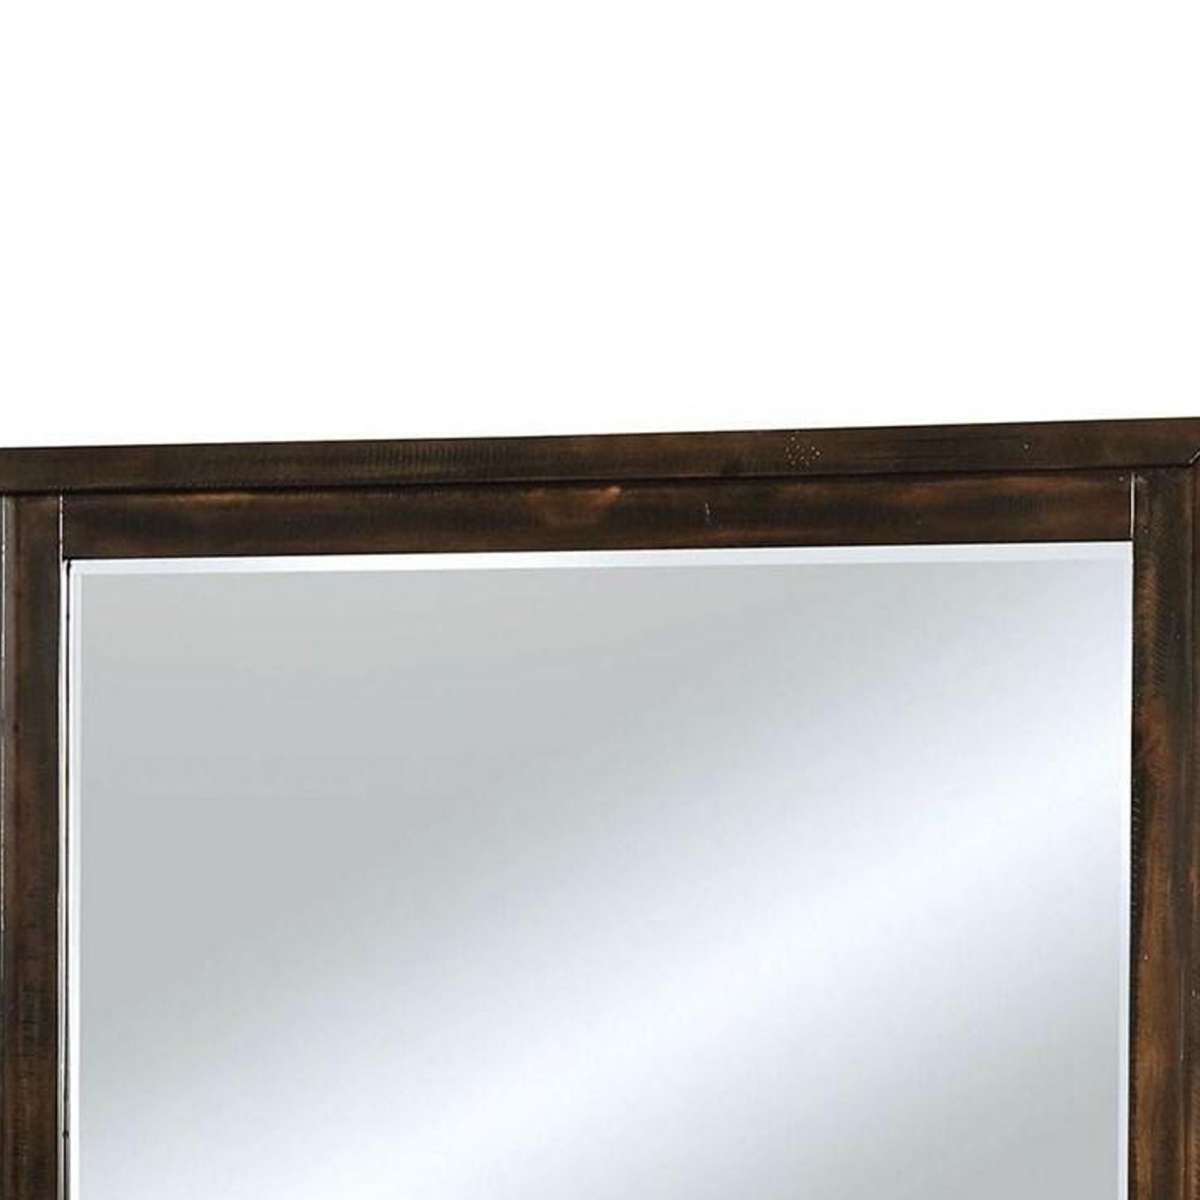 Benzara 46 Inch Transitional Style Wooden Frame Mirror, Dark Brown By Benzara Mirrors BM233738